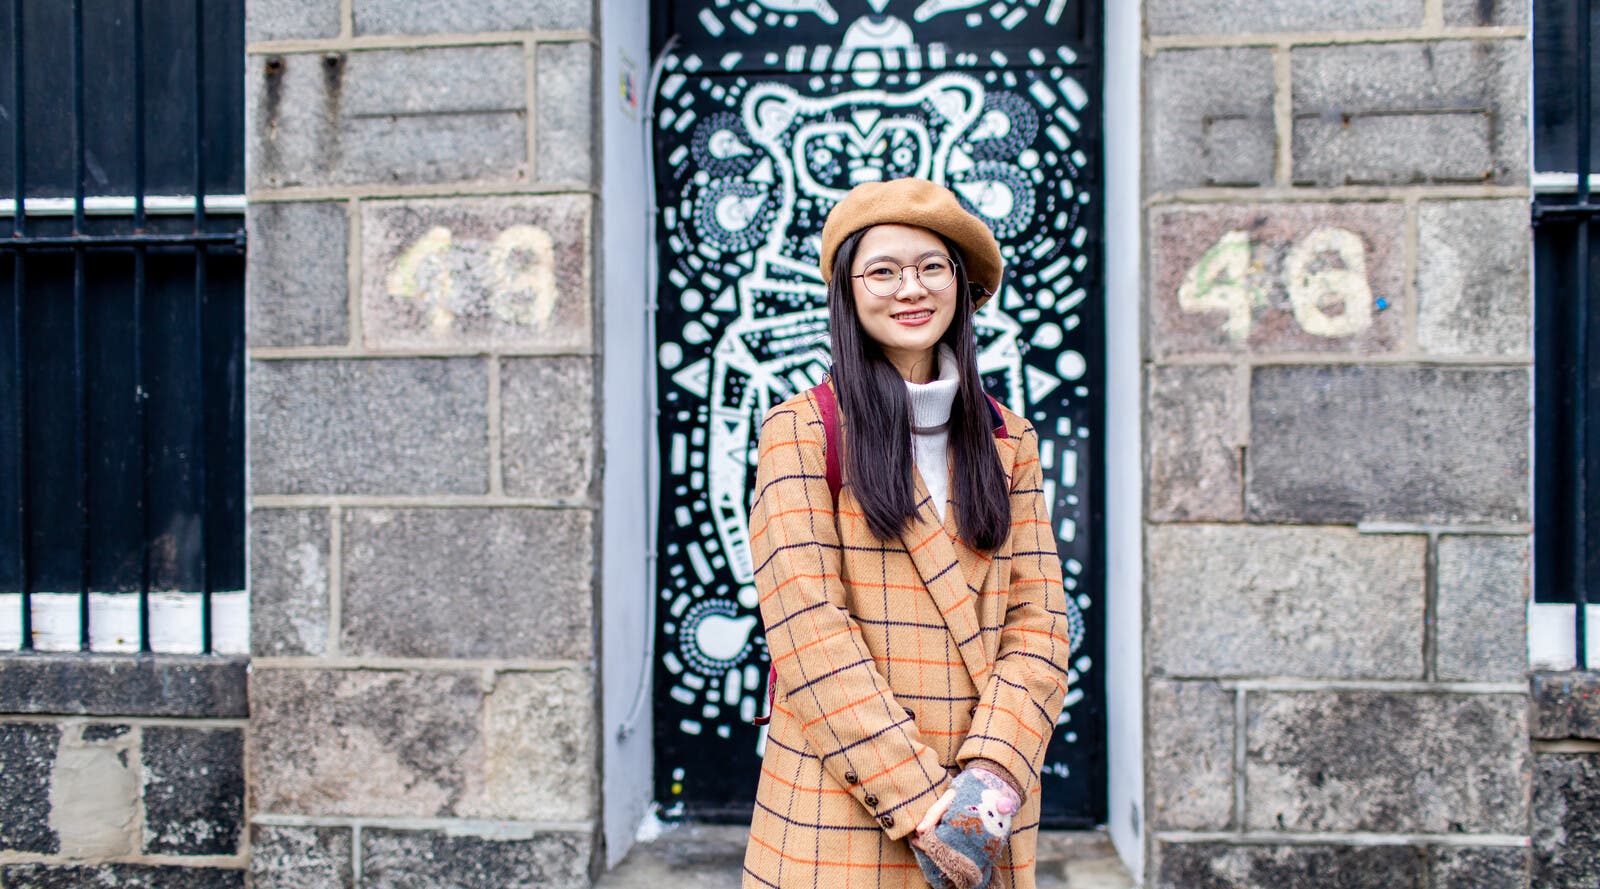 Student smiling in front of decorative door